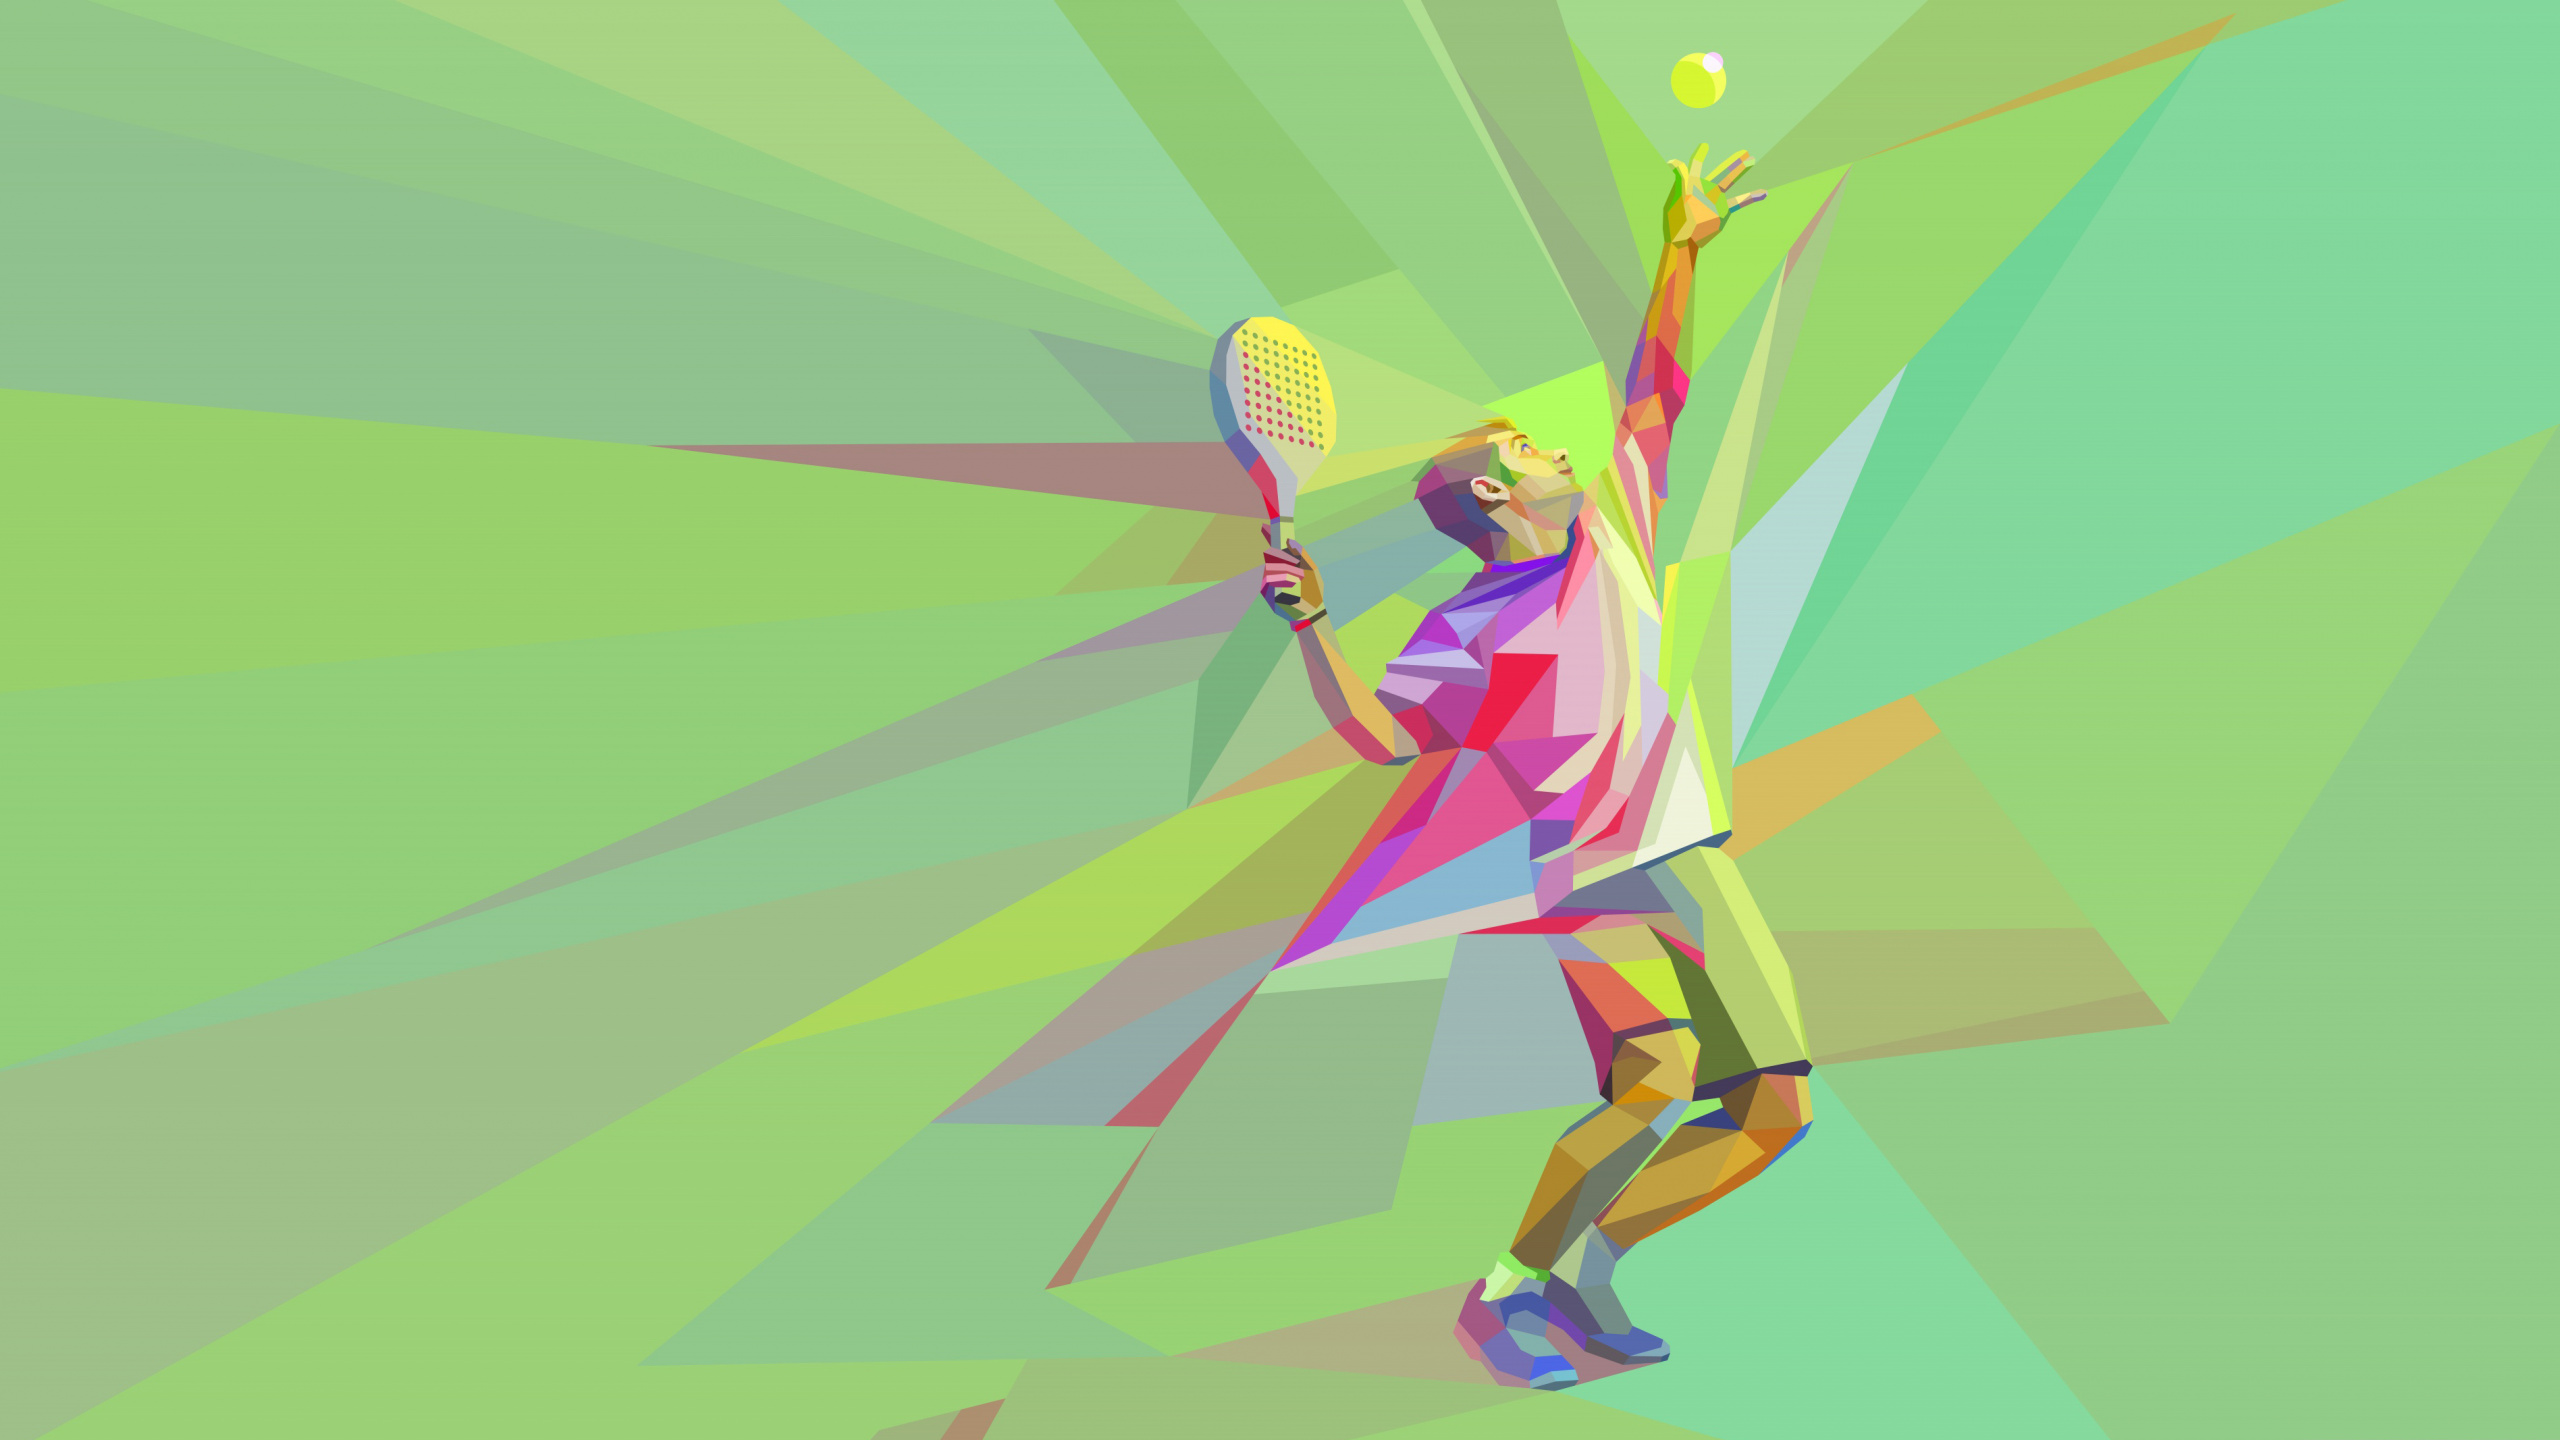 网球, 图形设计, 艺术, 温布尔登网球赛的冠军, 乐趣 壁纸 2560x1440 允许